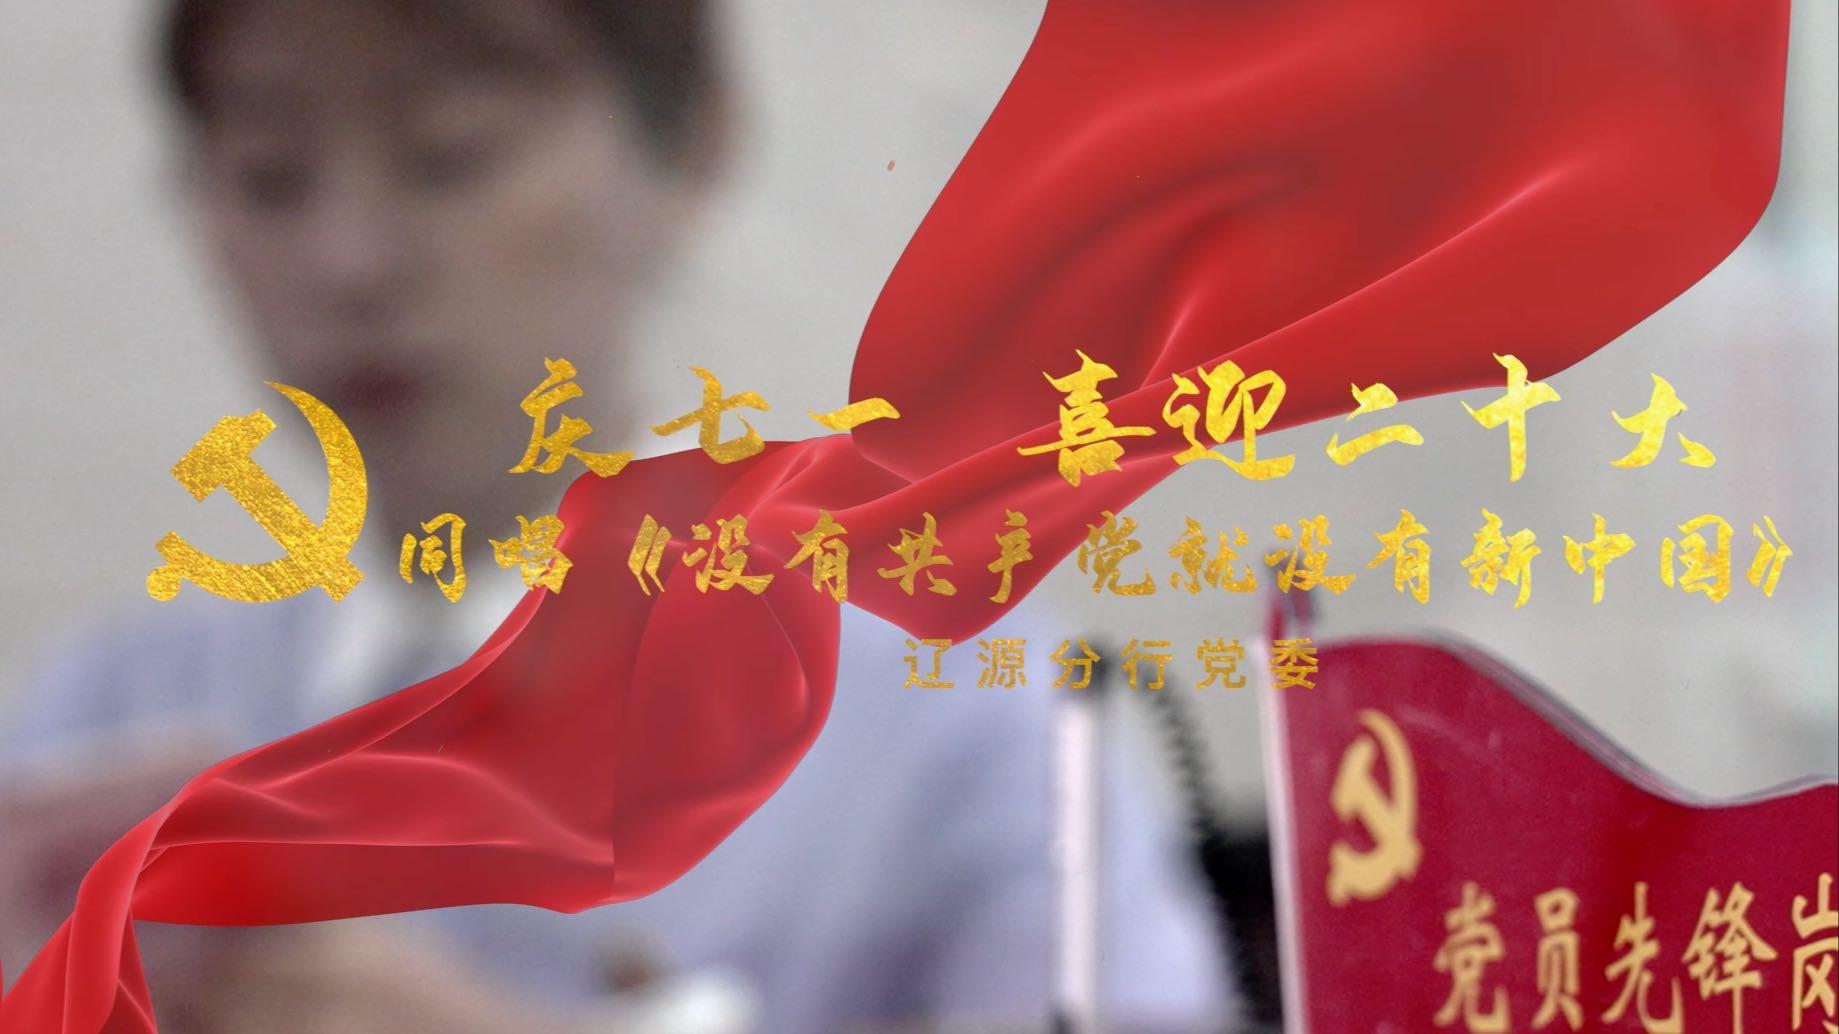 吉林银行-没有共产党就没有新中国